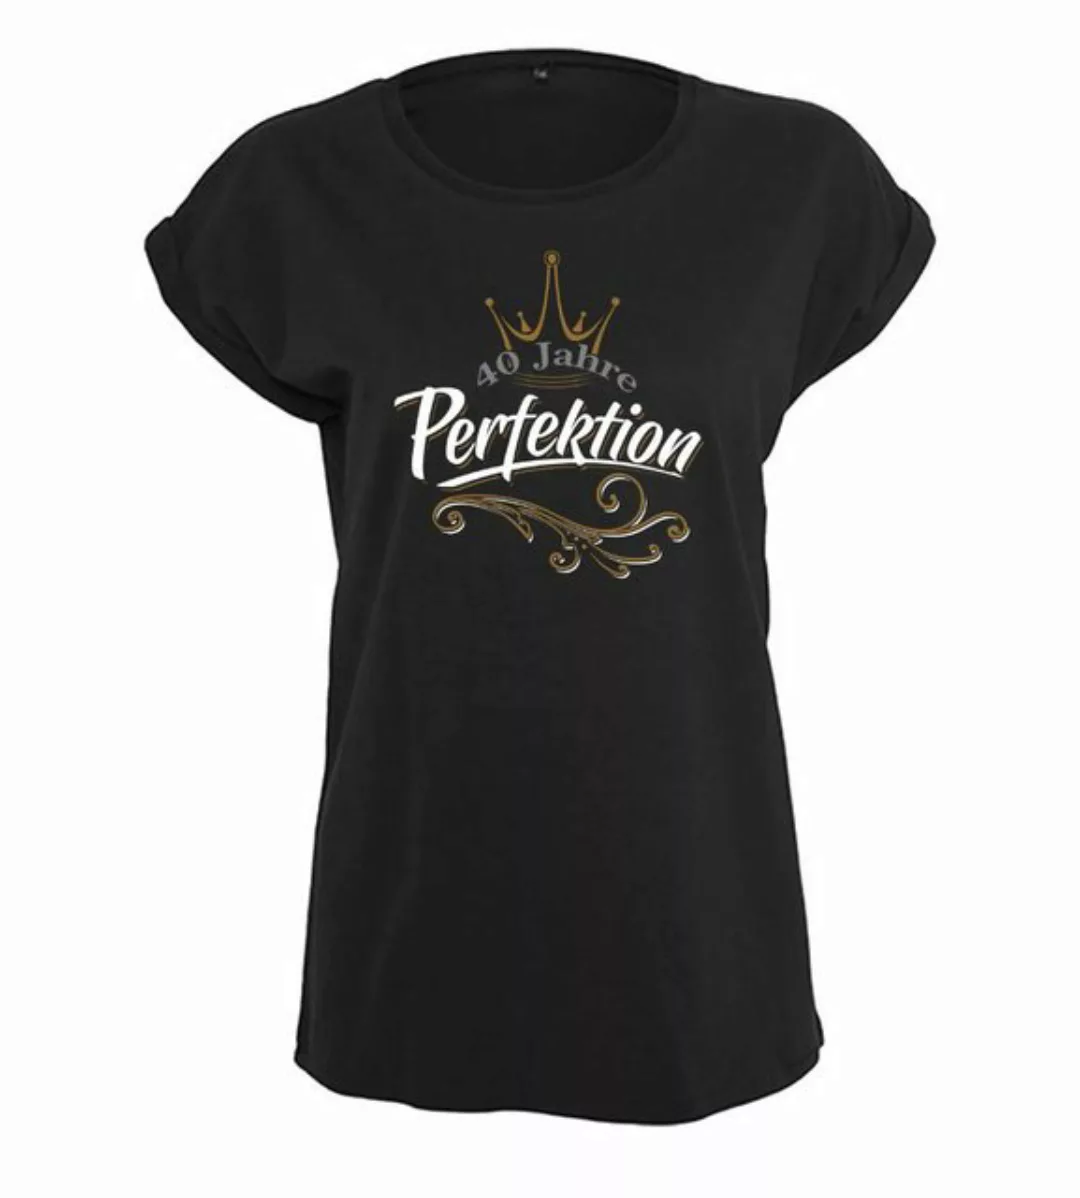 Baddery Print-Shirt Geburtstagsgeschenk für Frauen : 40 Jahre Perfektion - günstig online kaufen